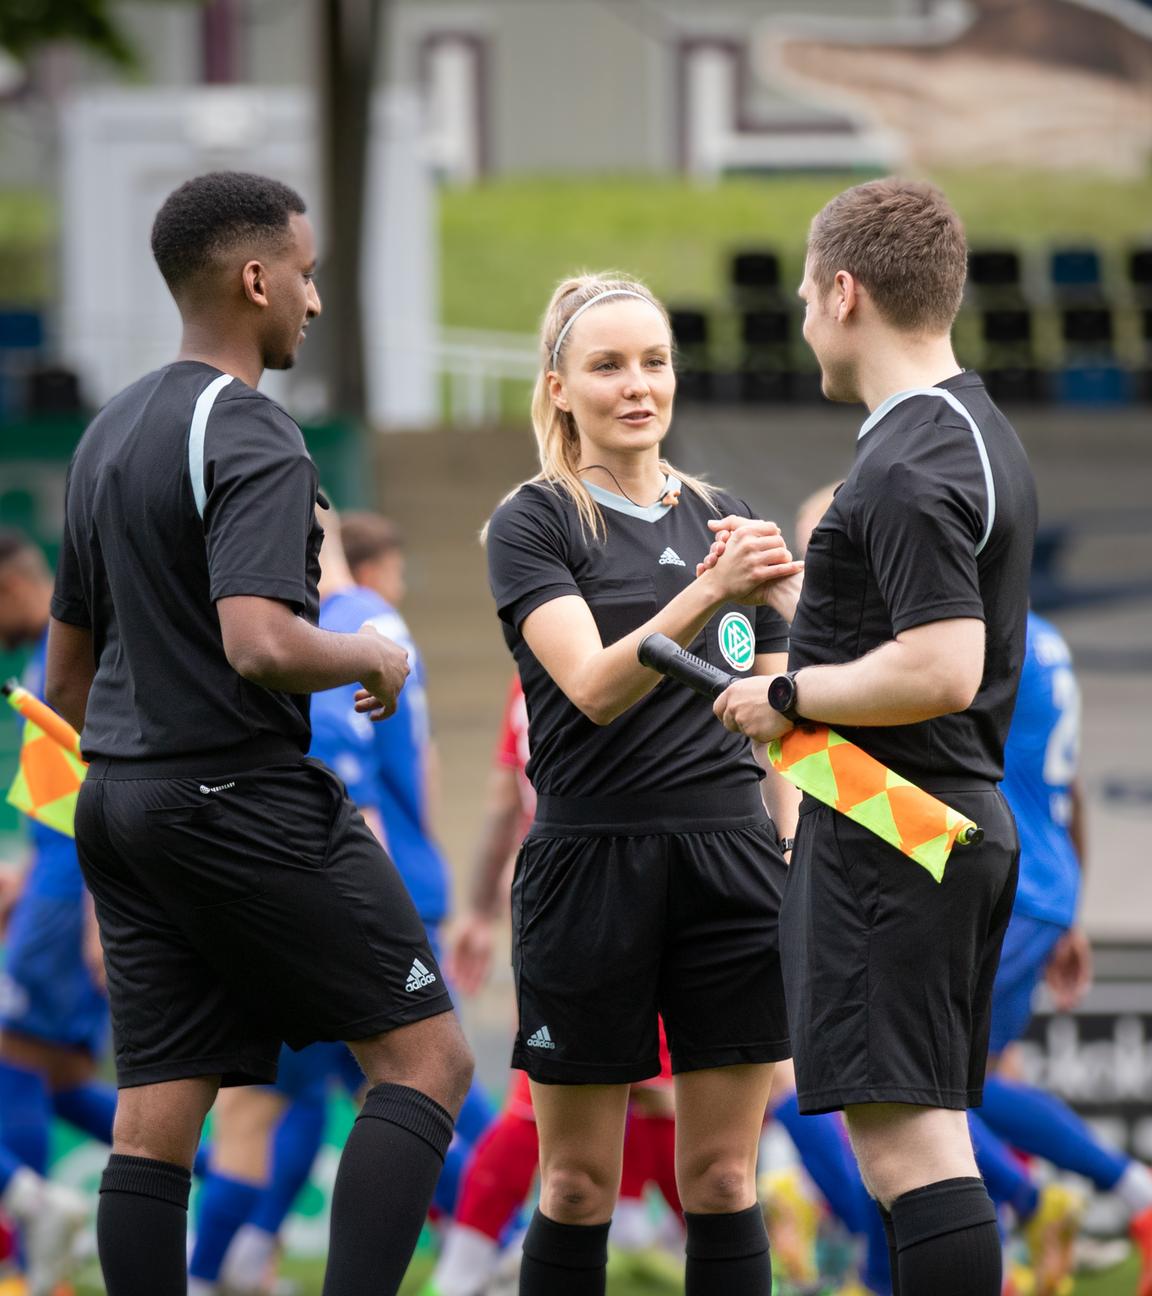 Fabienne ist im Stadion in Schiedsrichteroutfit im Gespräch mit zwei männlichen Kollegen. Im Hintergrund laufen Fußballspieler in blauer oder roter Trainingskleidung.